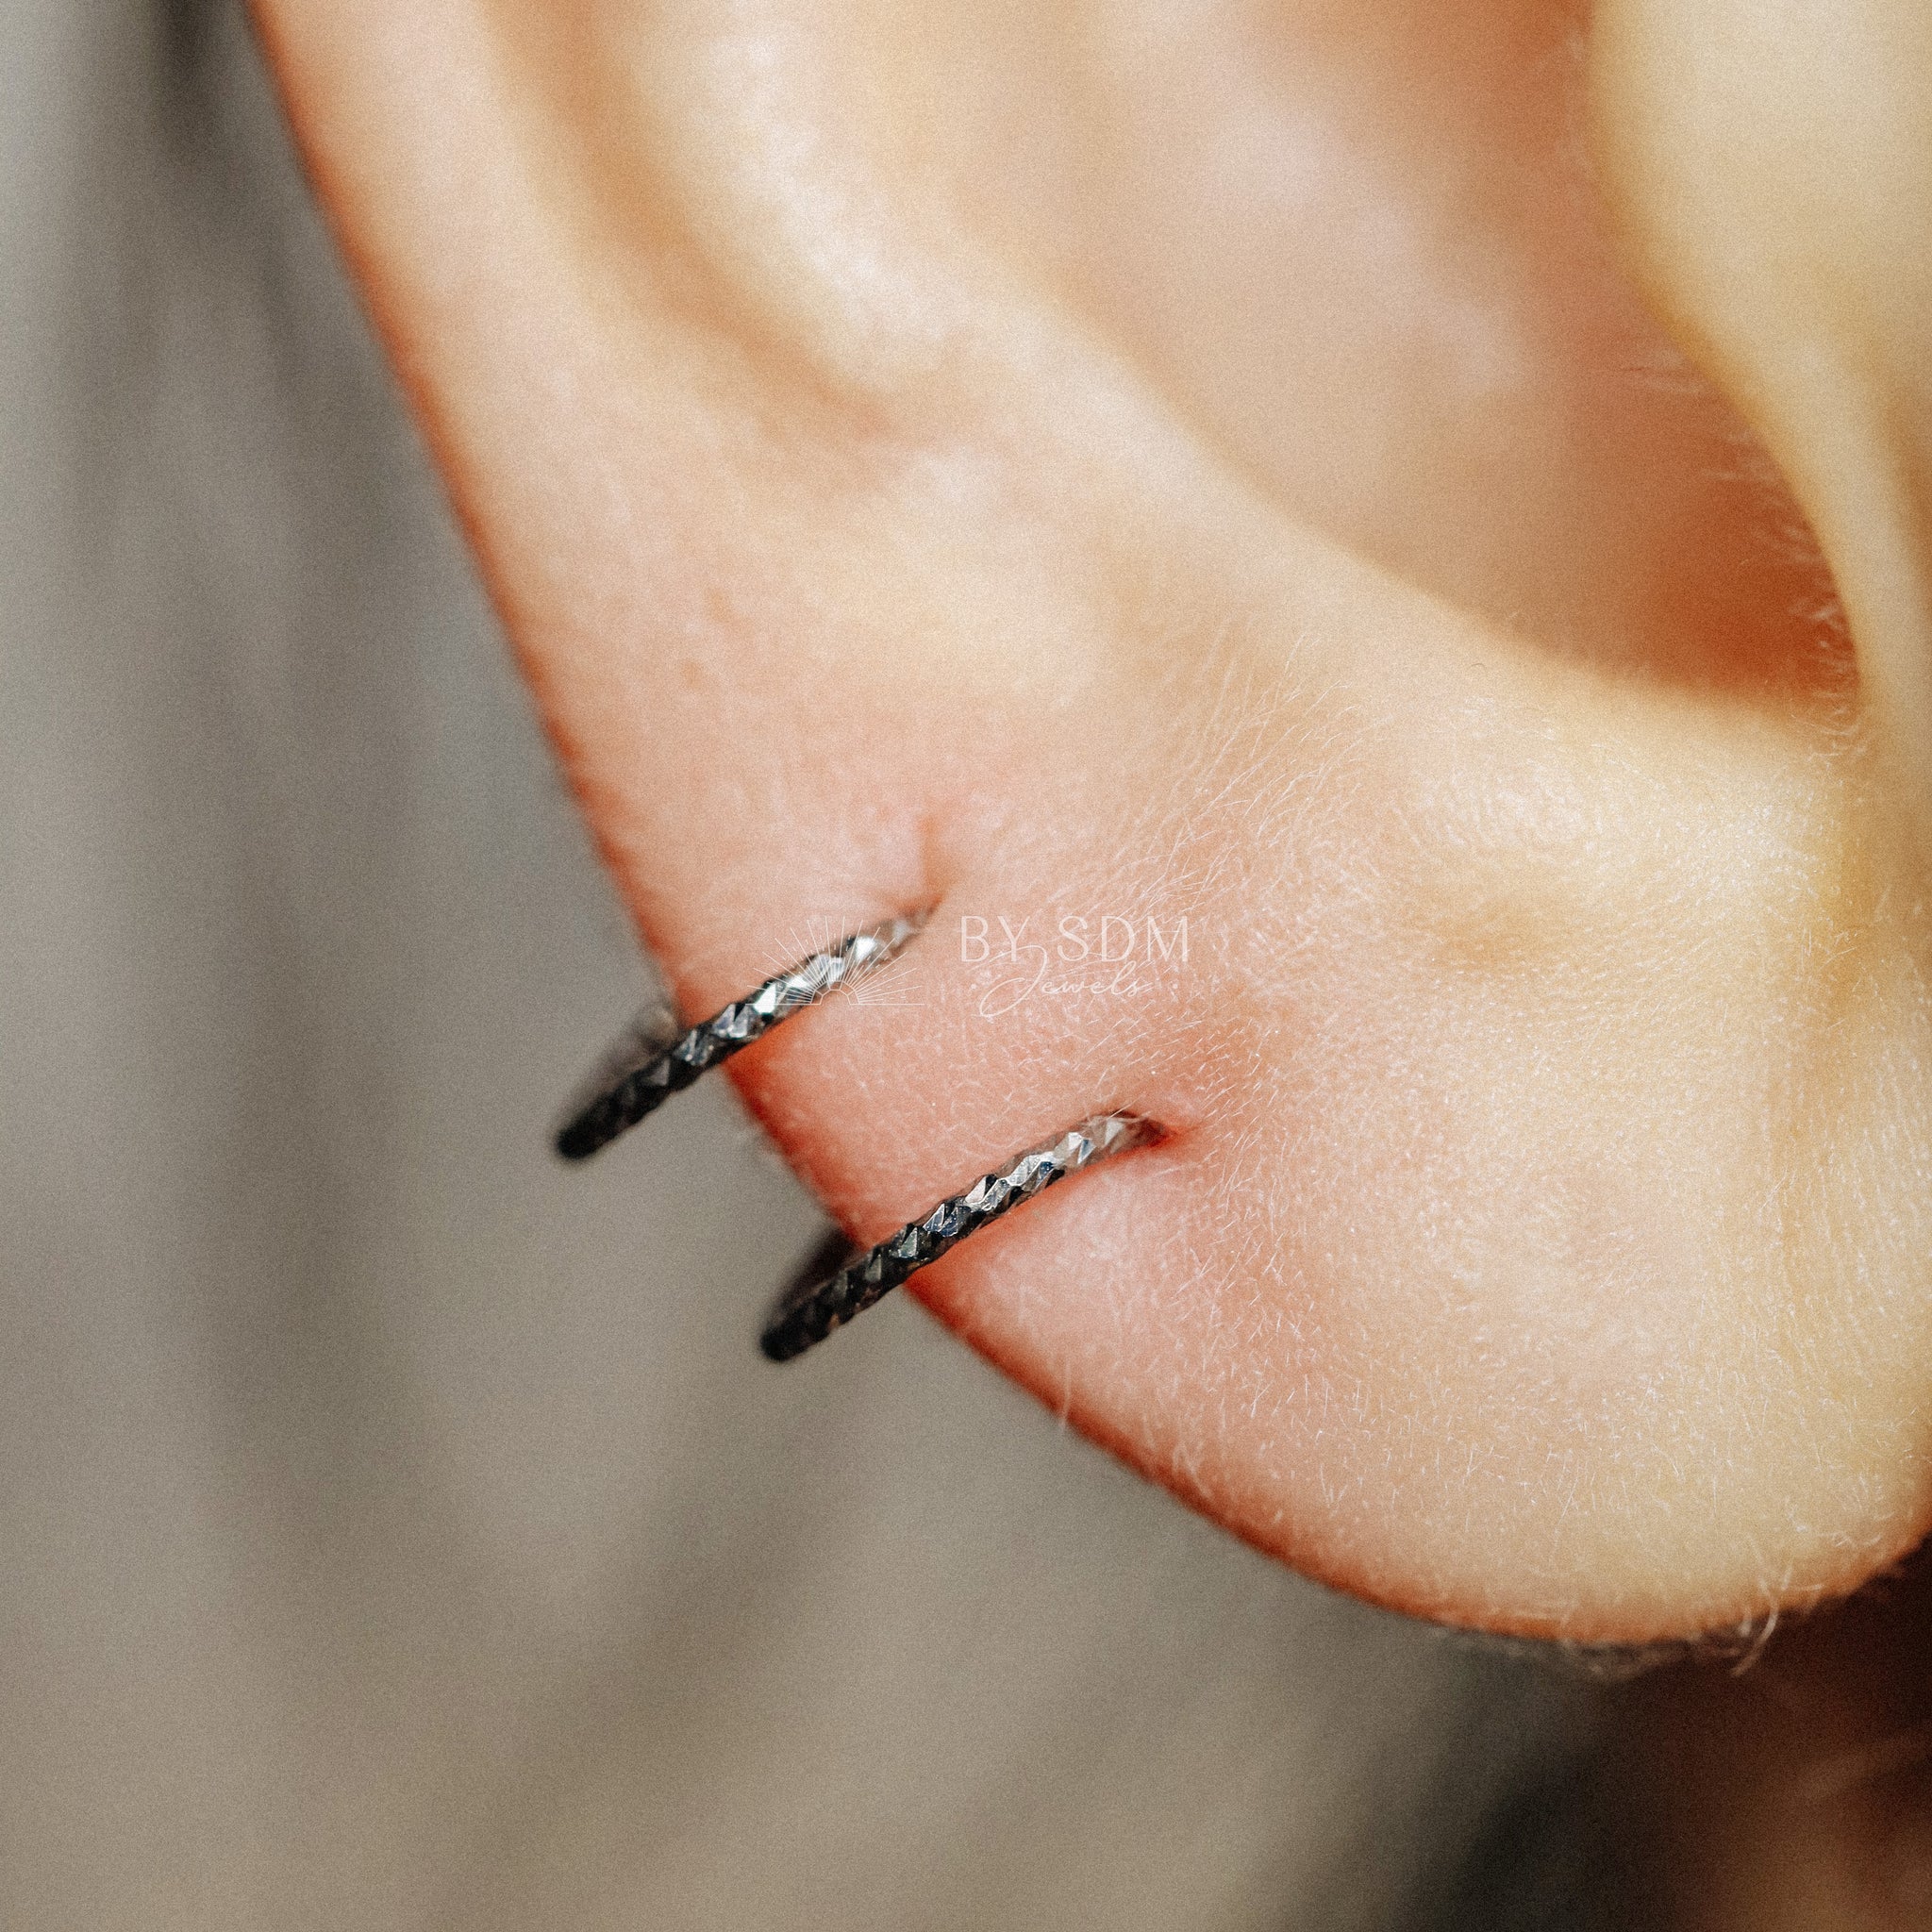 metal helix ear stud piercing earring 2x Unique Spiral Double